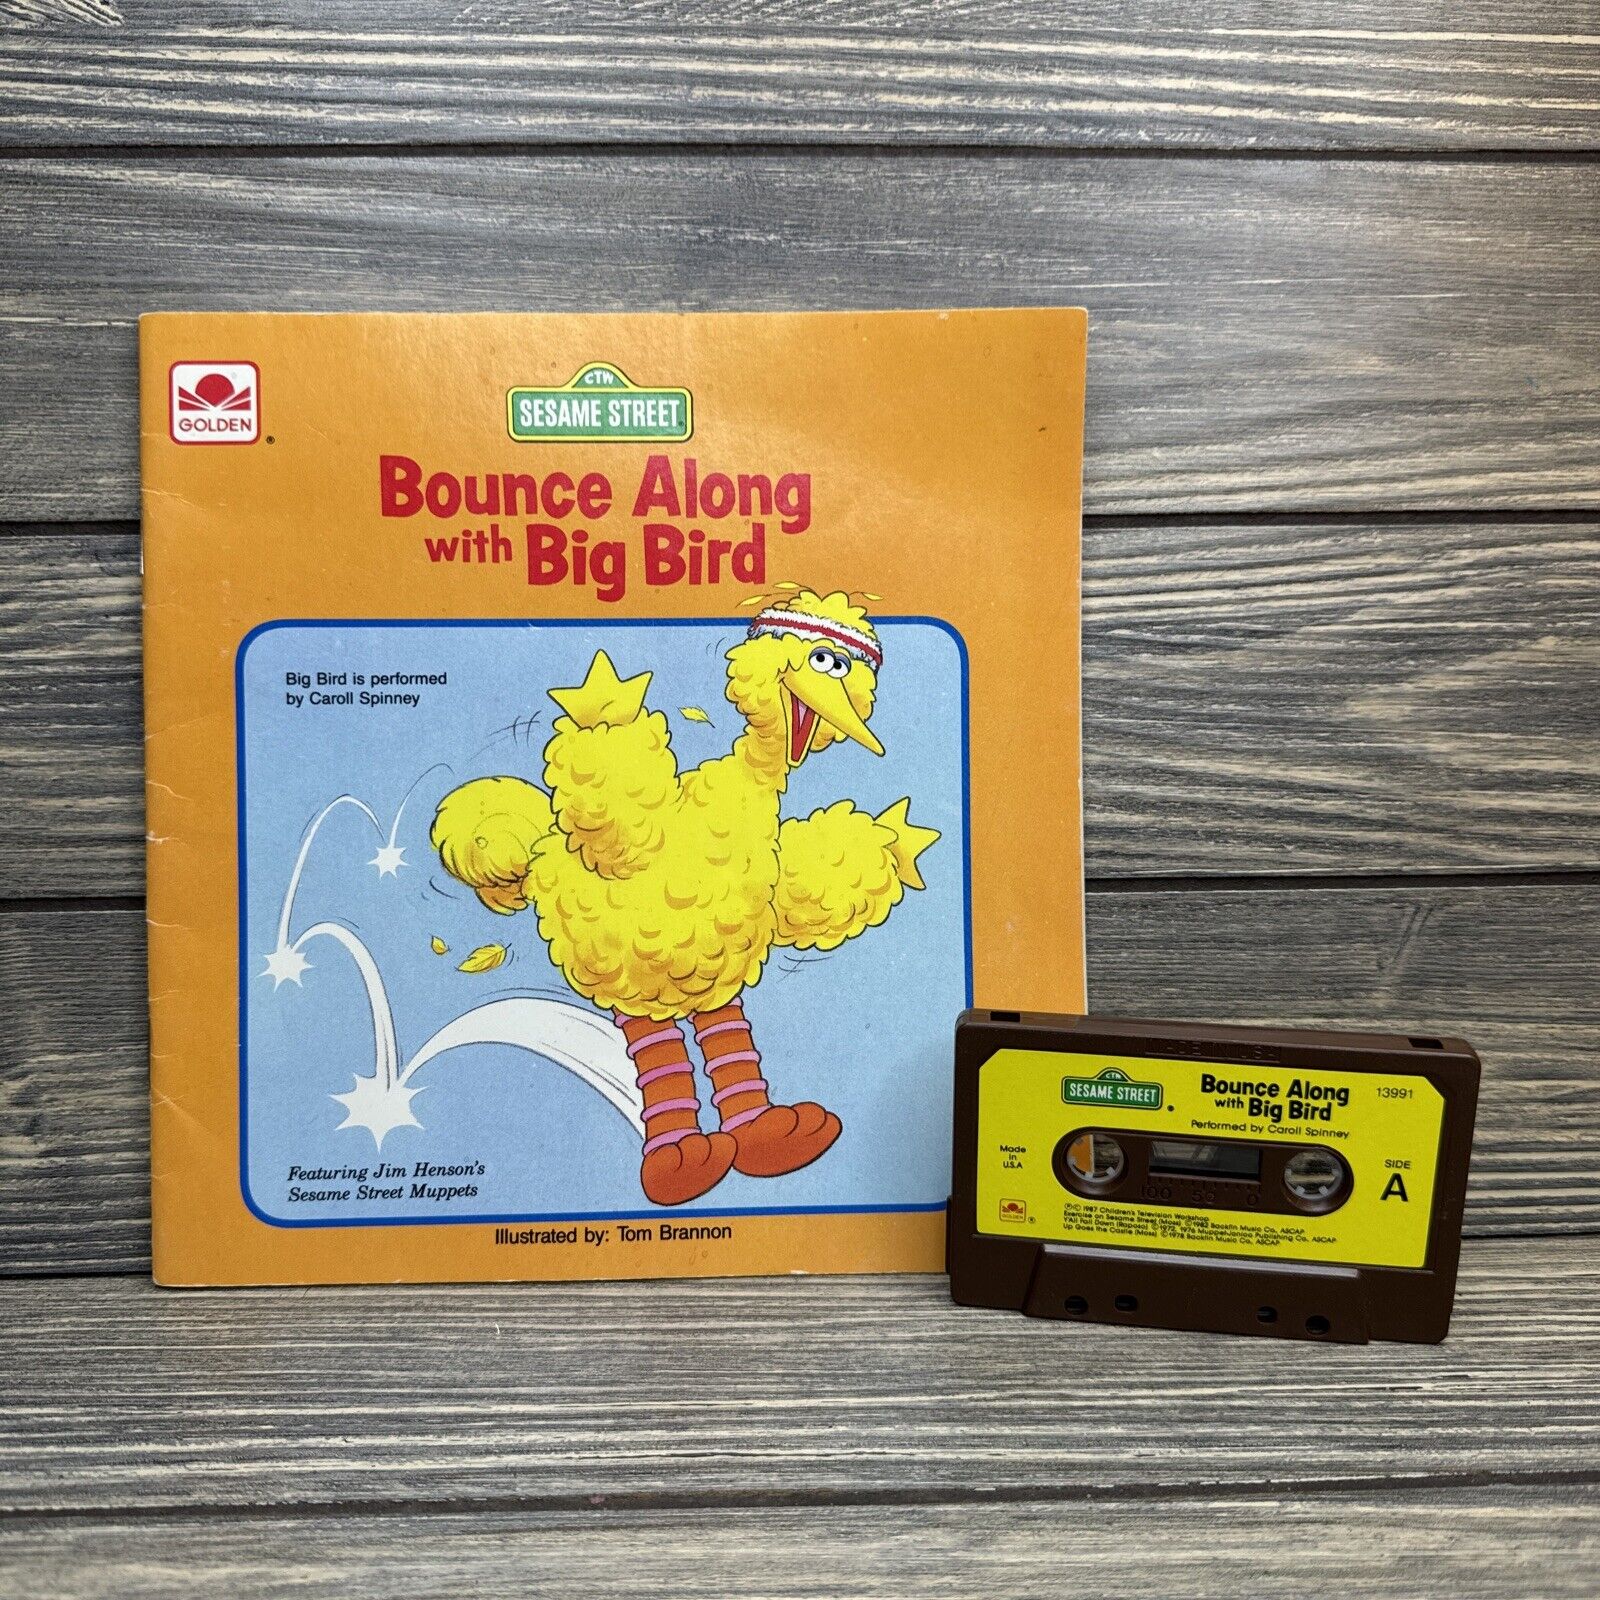 Vtg 1987 Golden Song Book Bounce Along with Big Bird Read Along Cassette